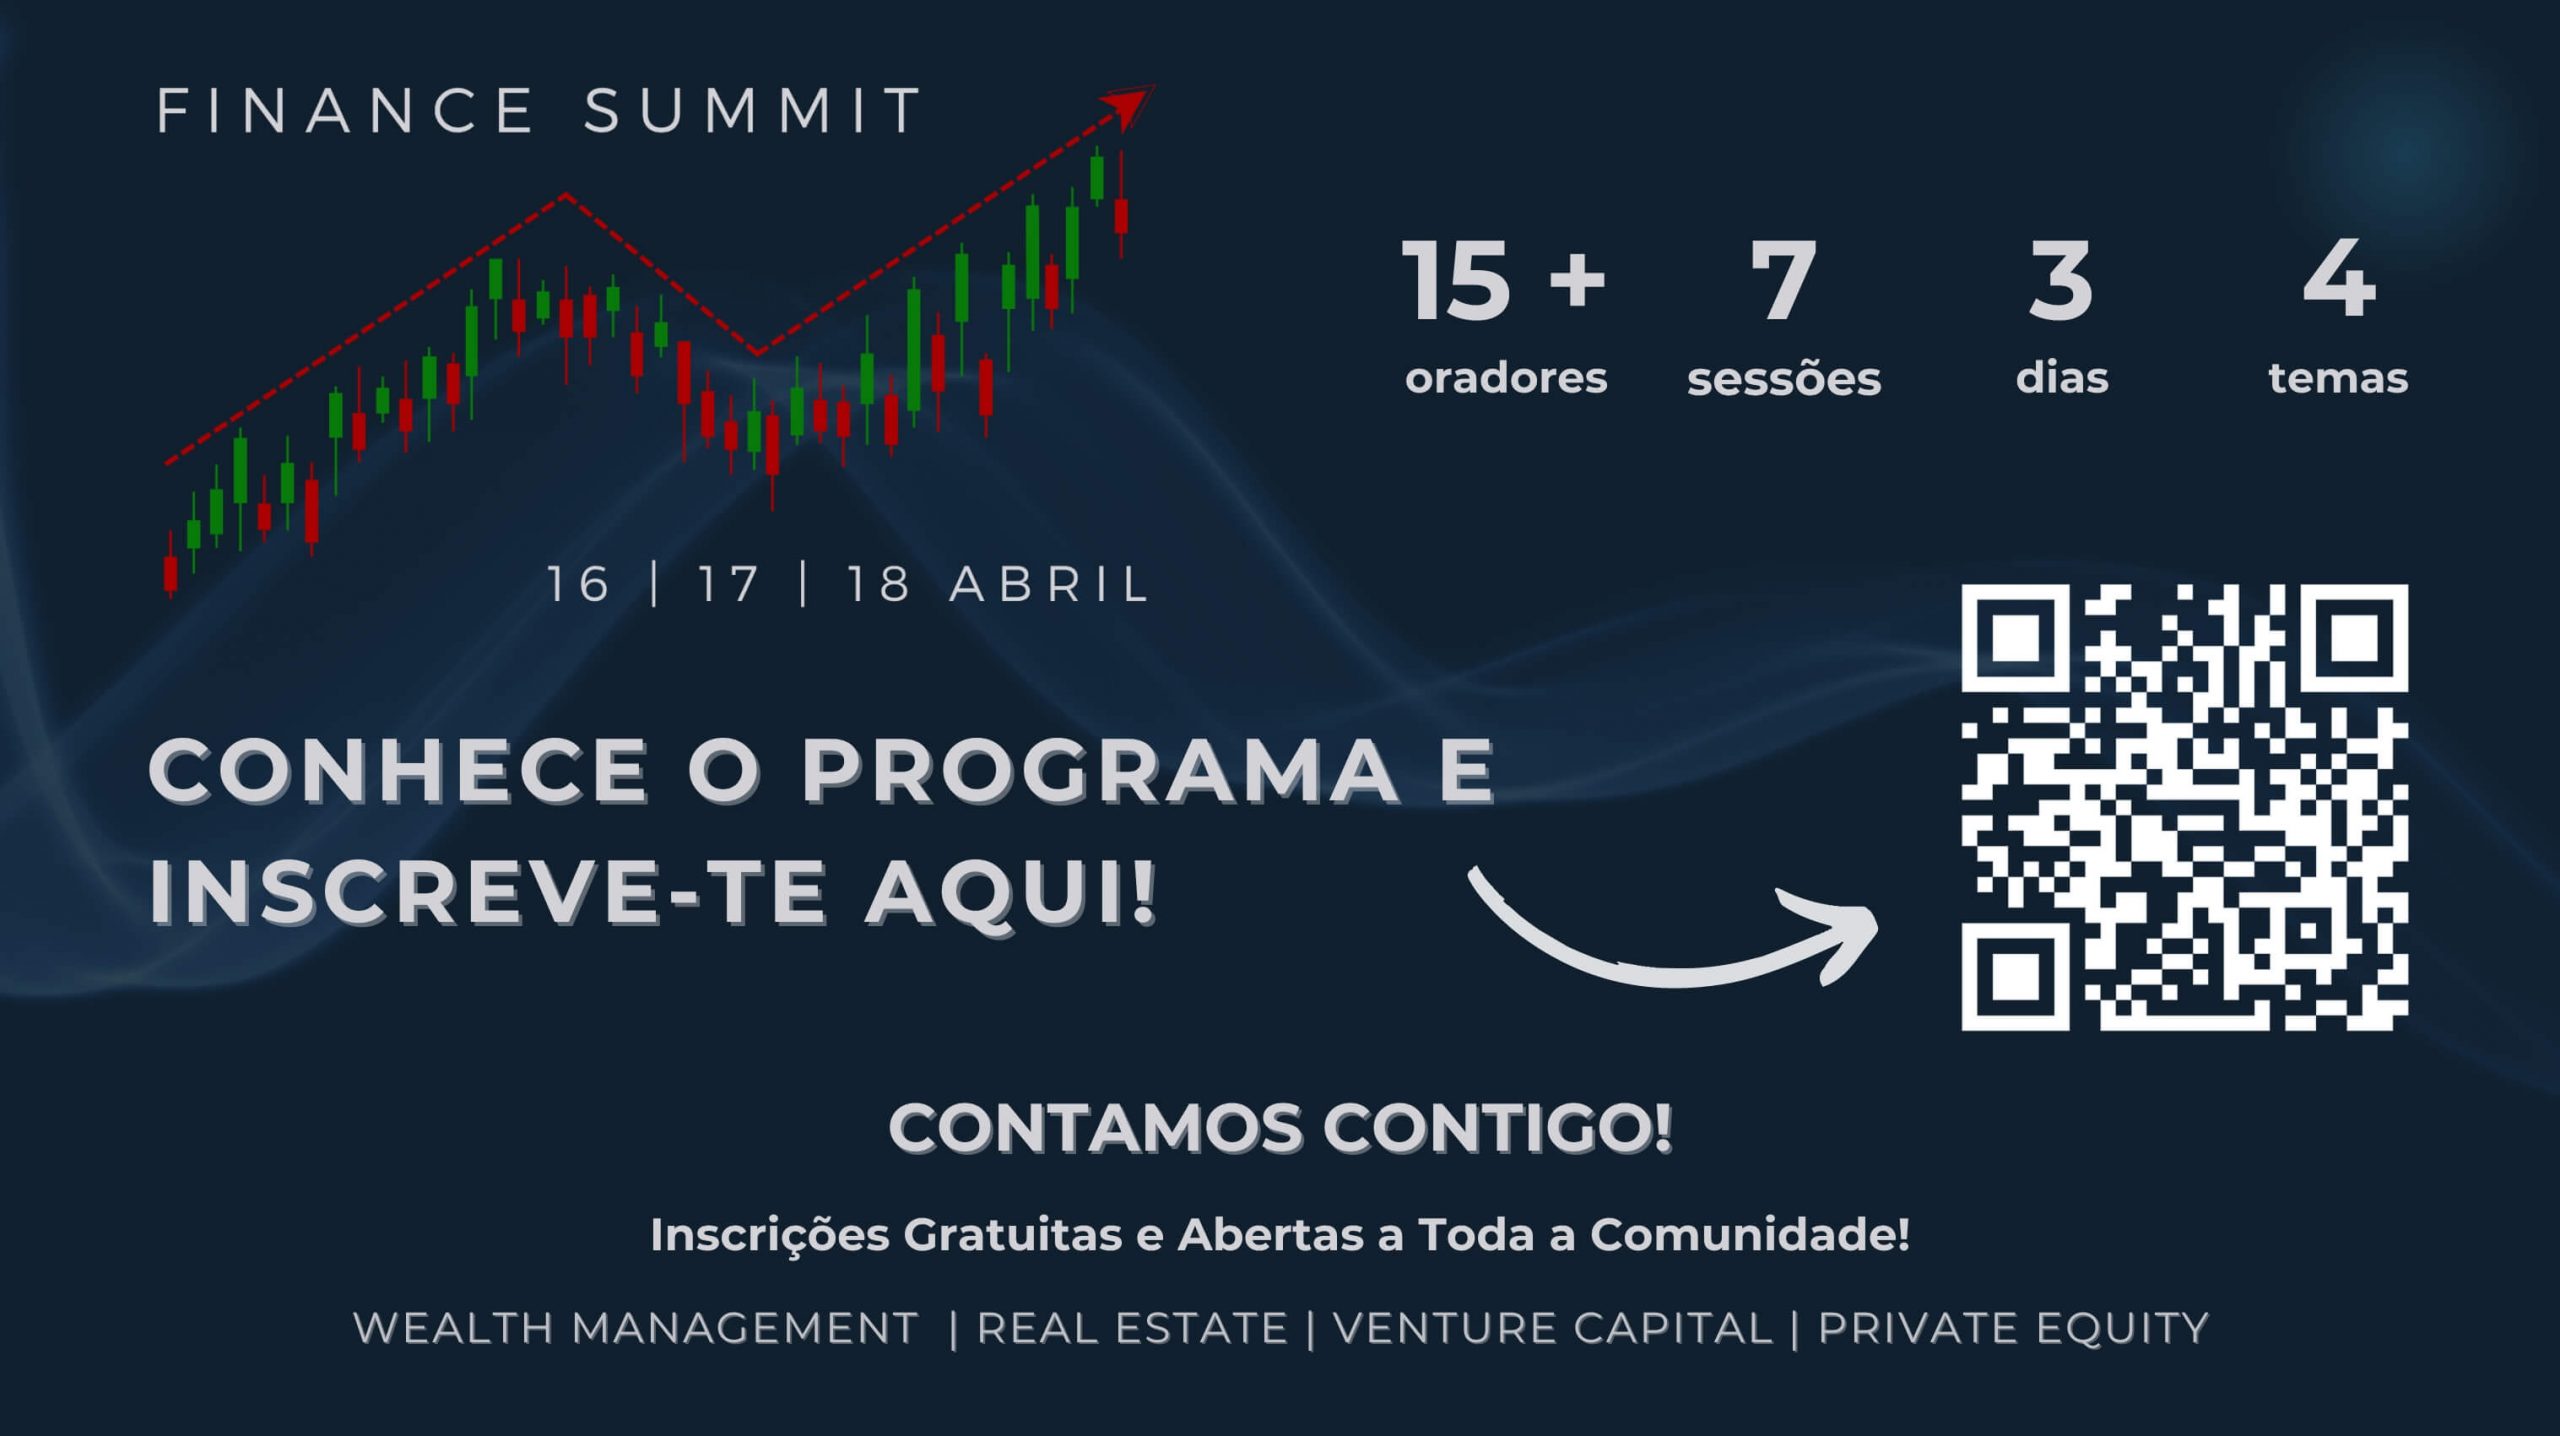 Finance Summit